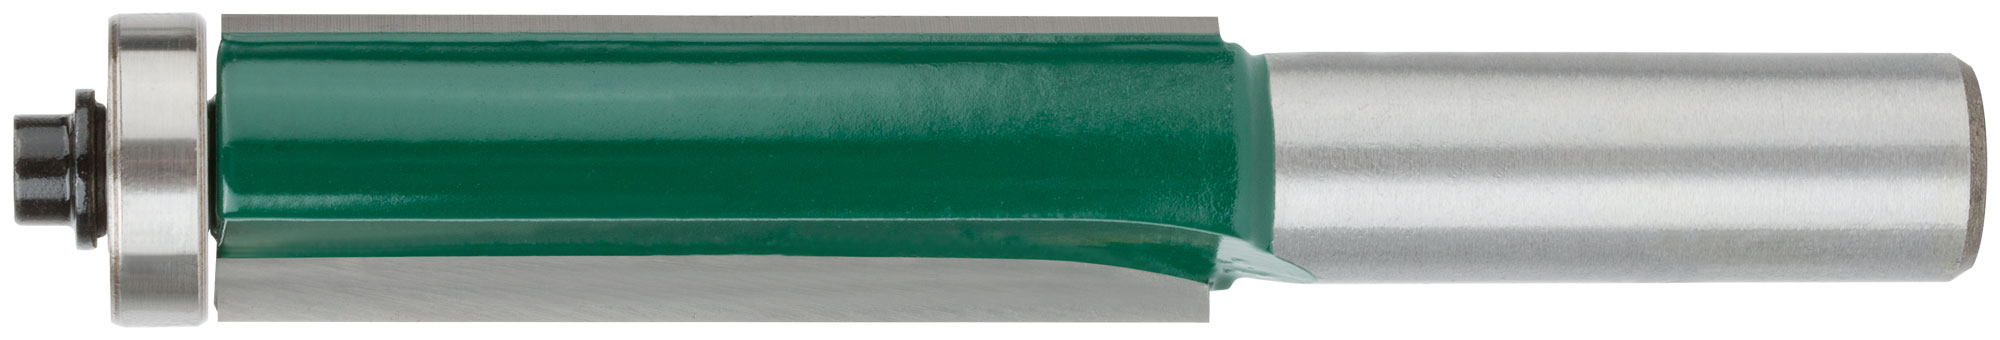 Фреза для выборки заподлицо с нижним подшипником 16х50х100,5мм  FIT 3604-125016 фреза для выборки паза под петли с верхним подшипником procut